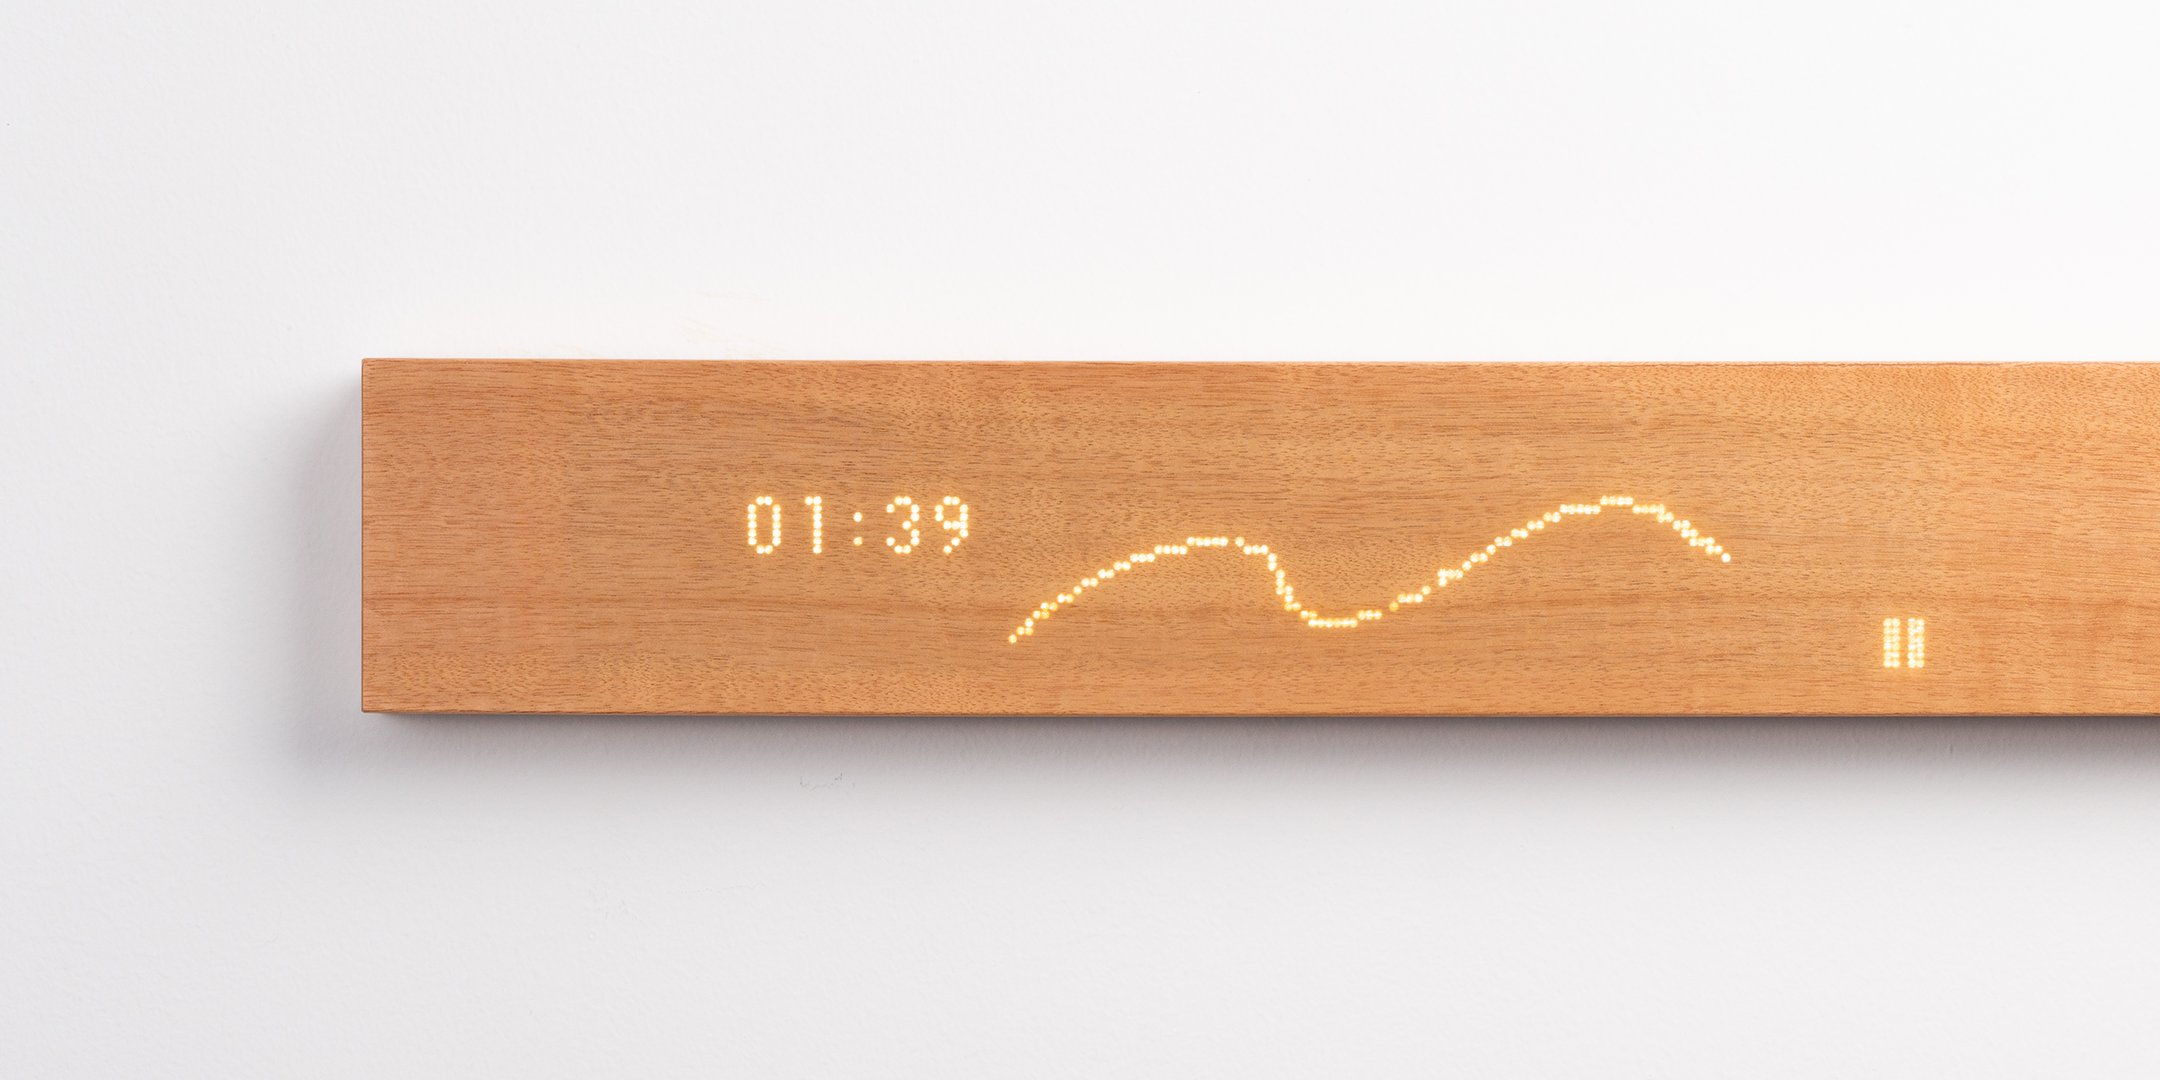 木製インターフェース「muiボード」とAmazon Alexaの連携により、穏やかな体験が実現